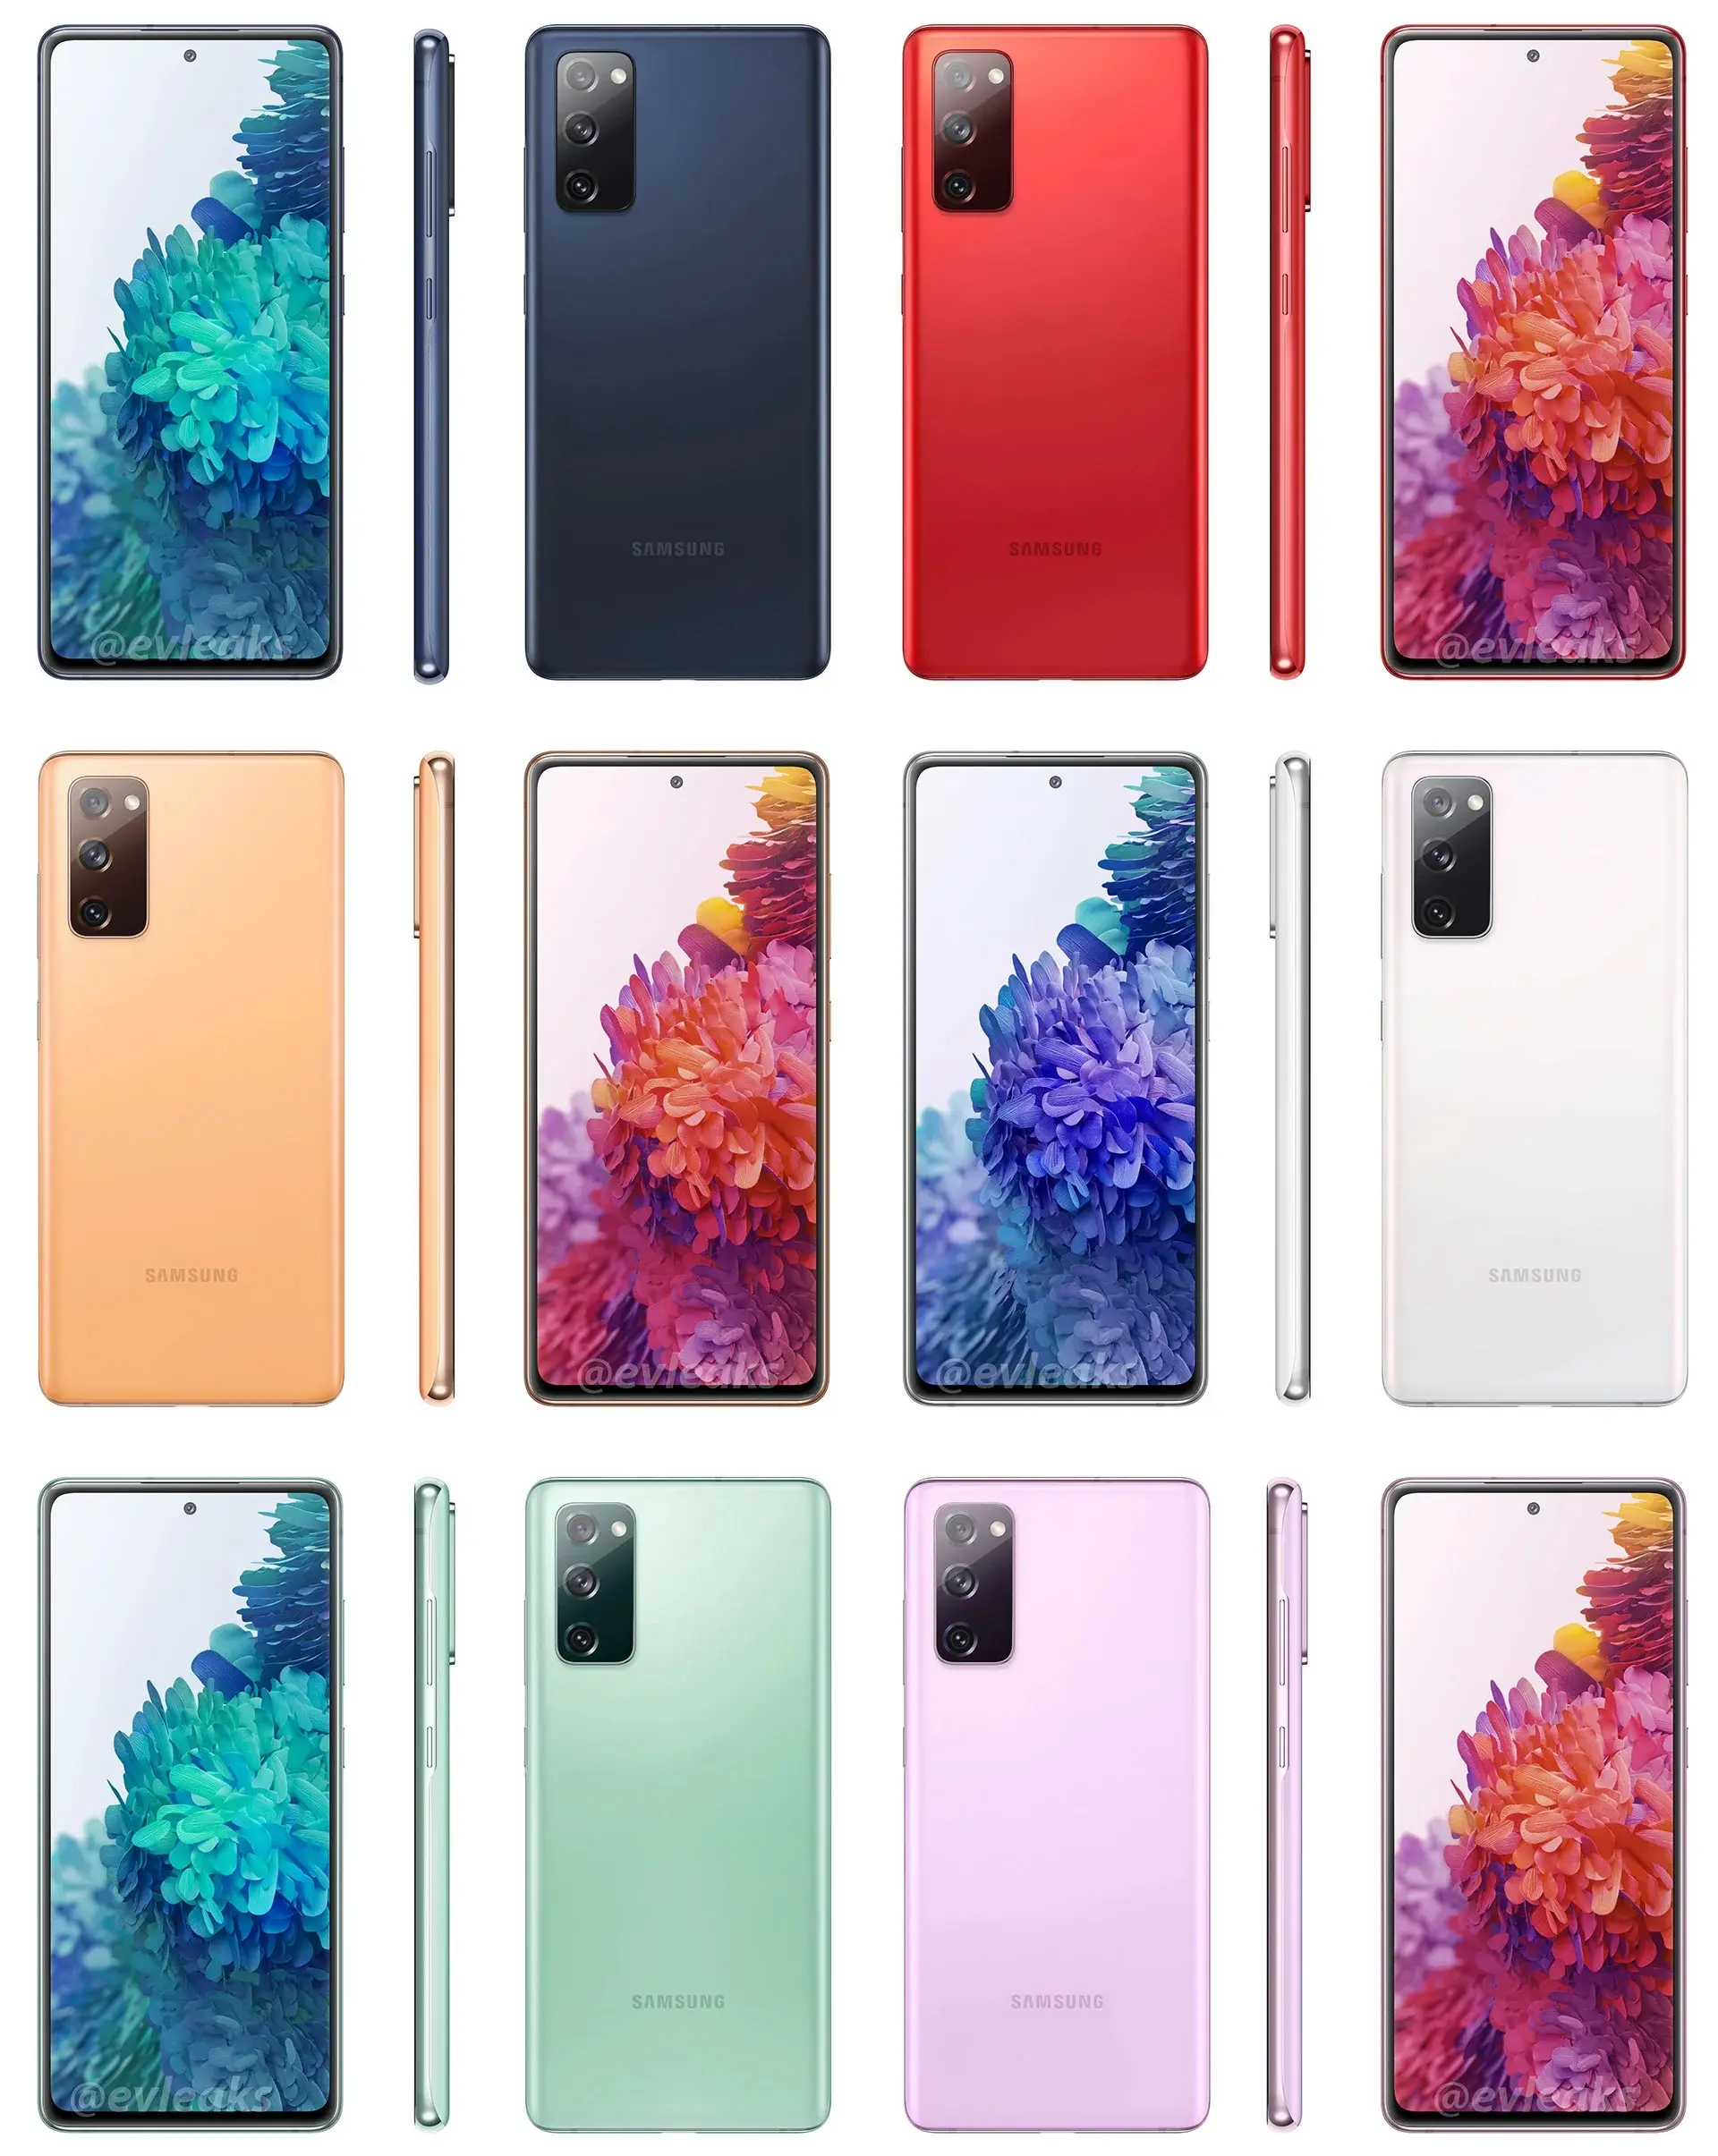 Galaxy S20 Fan Edition estará disponible en 6 colores